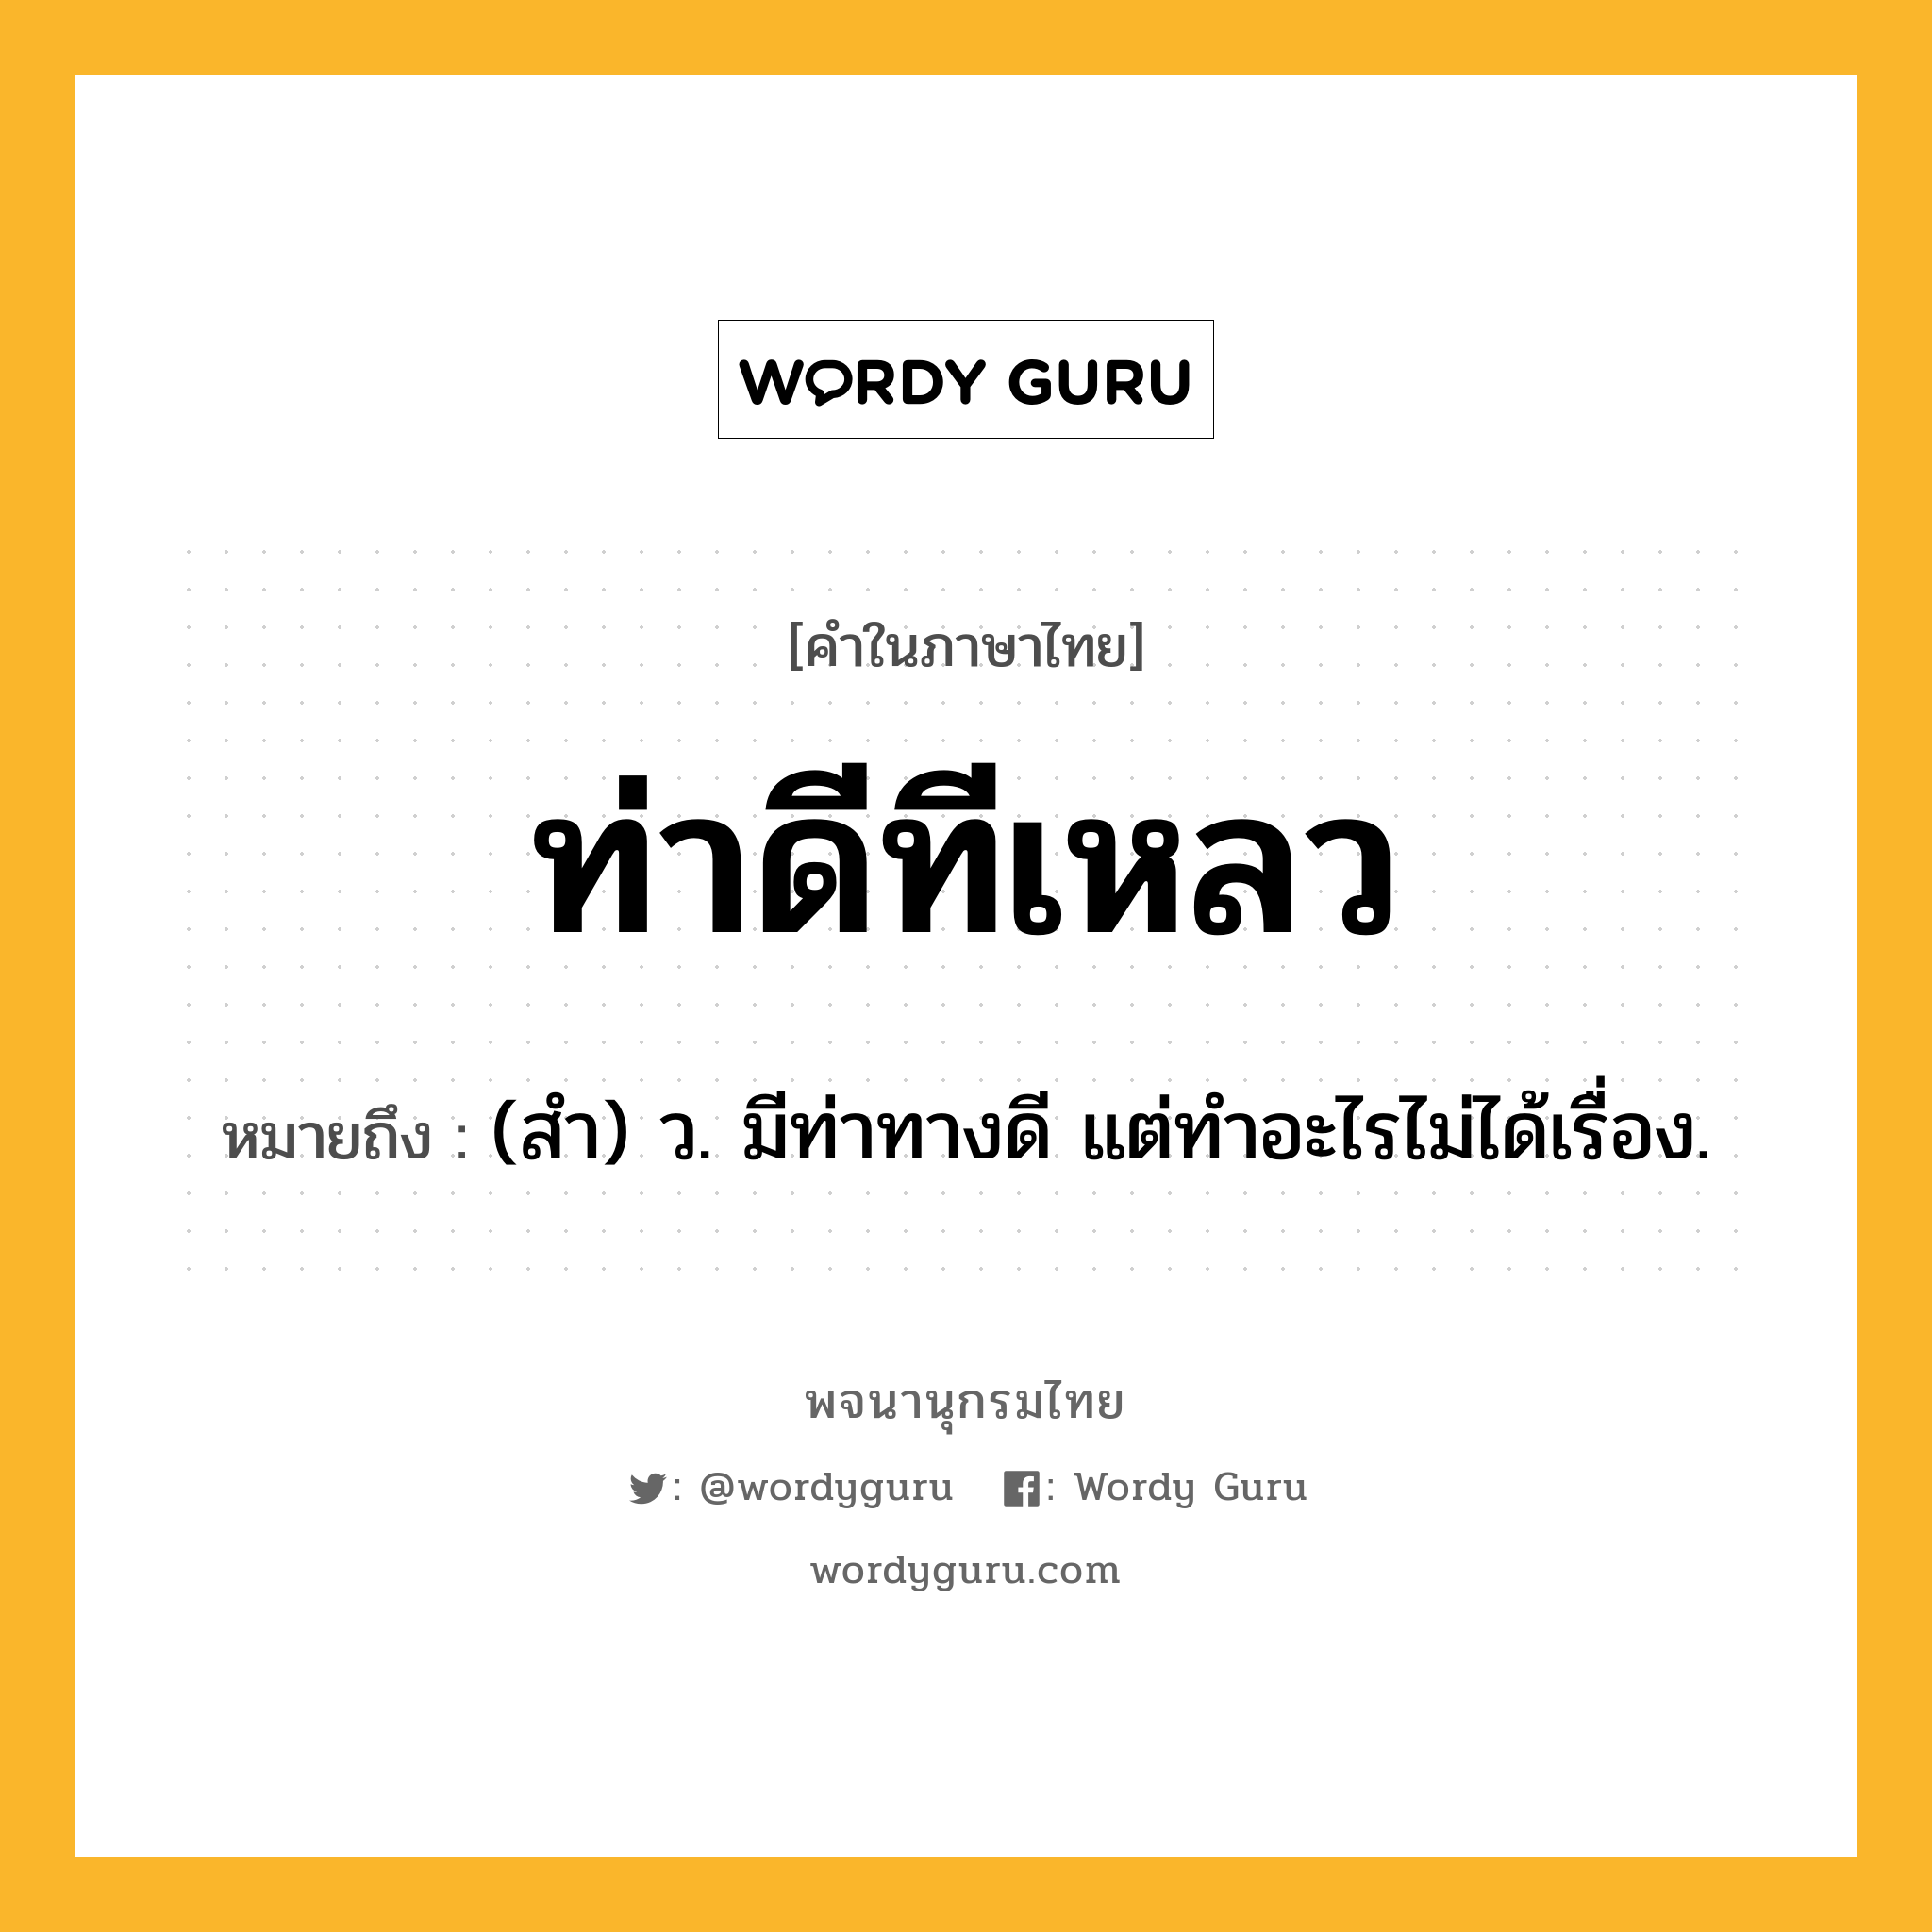 ท่าดีทีเหลว ความหมาย หมายถึงอะไร?, คำในภาษาไทย ท่าดีทีเหลว หมายถึง (สํา) ว. มีท่าทางดี แต่ทําอะไรไม่ได้เรื่อง.